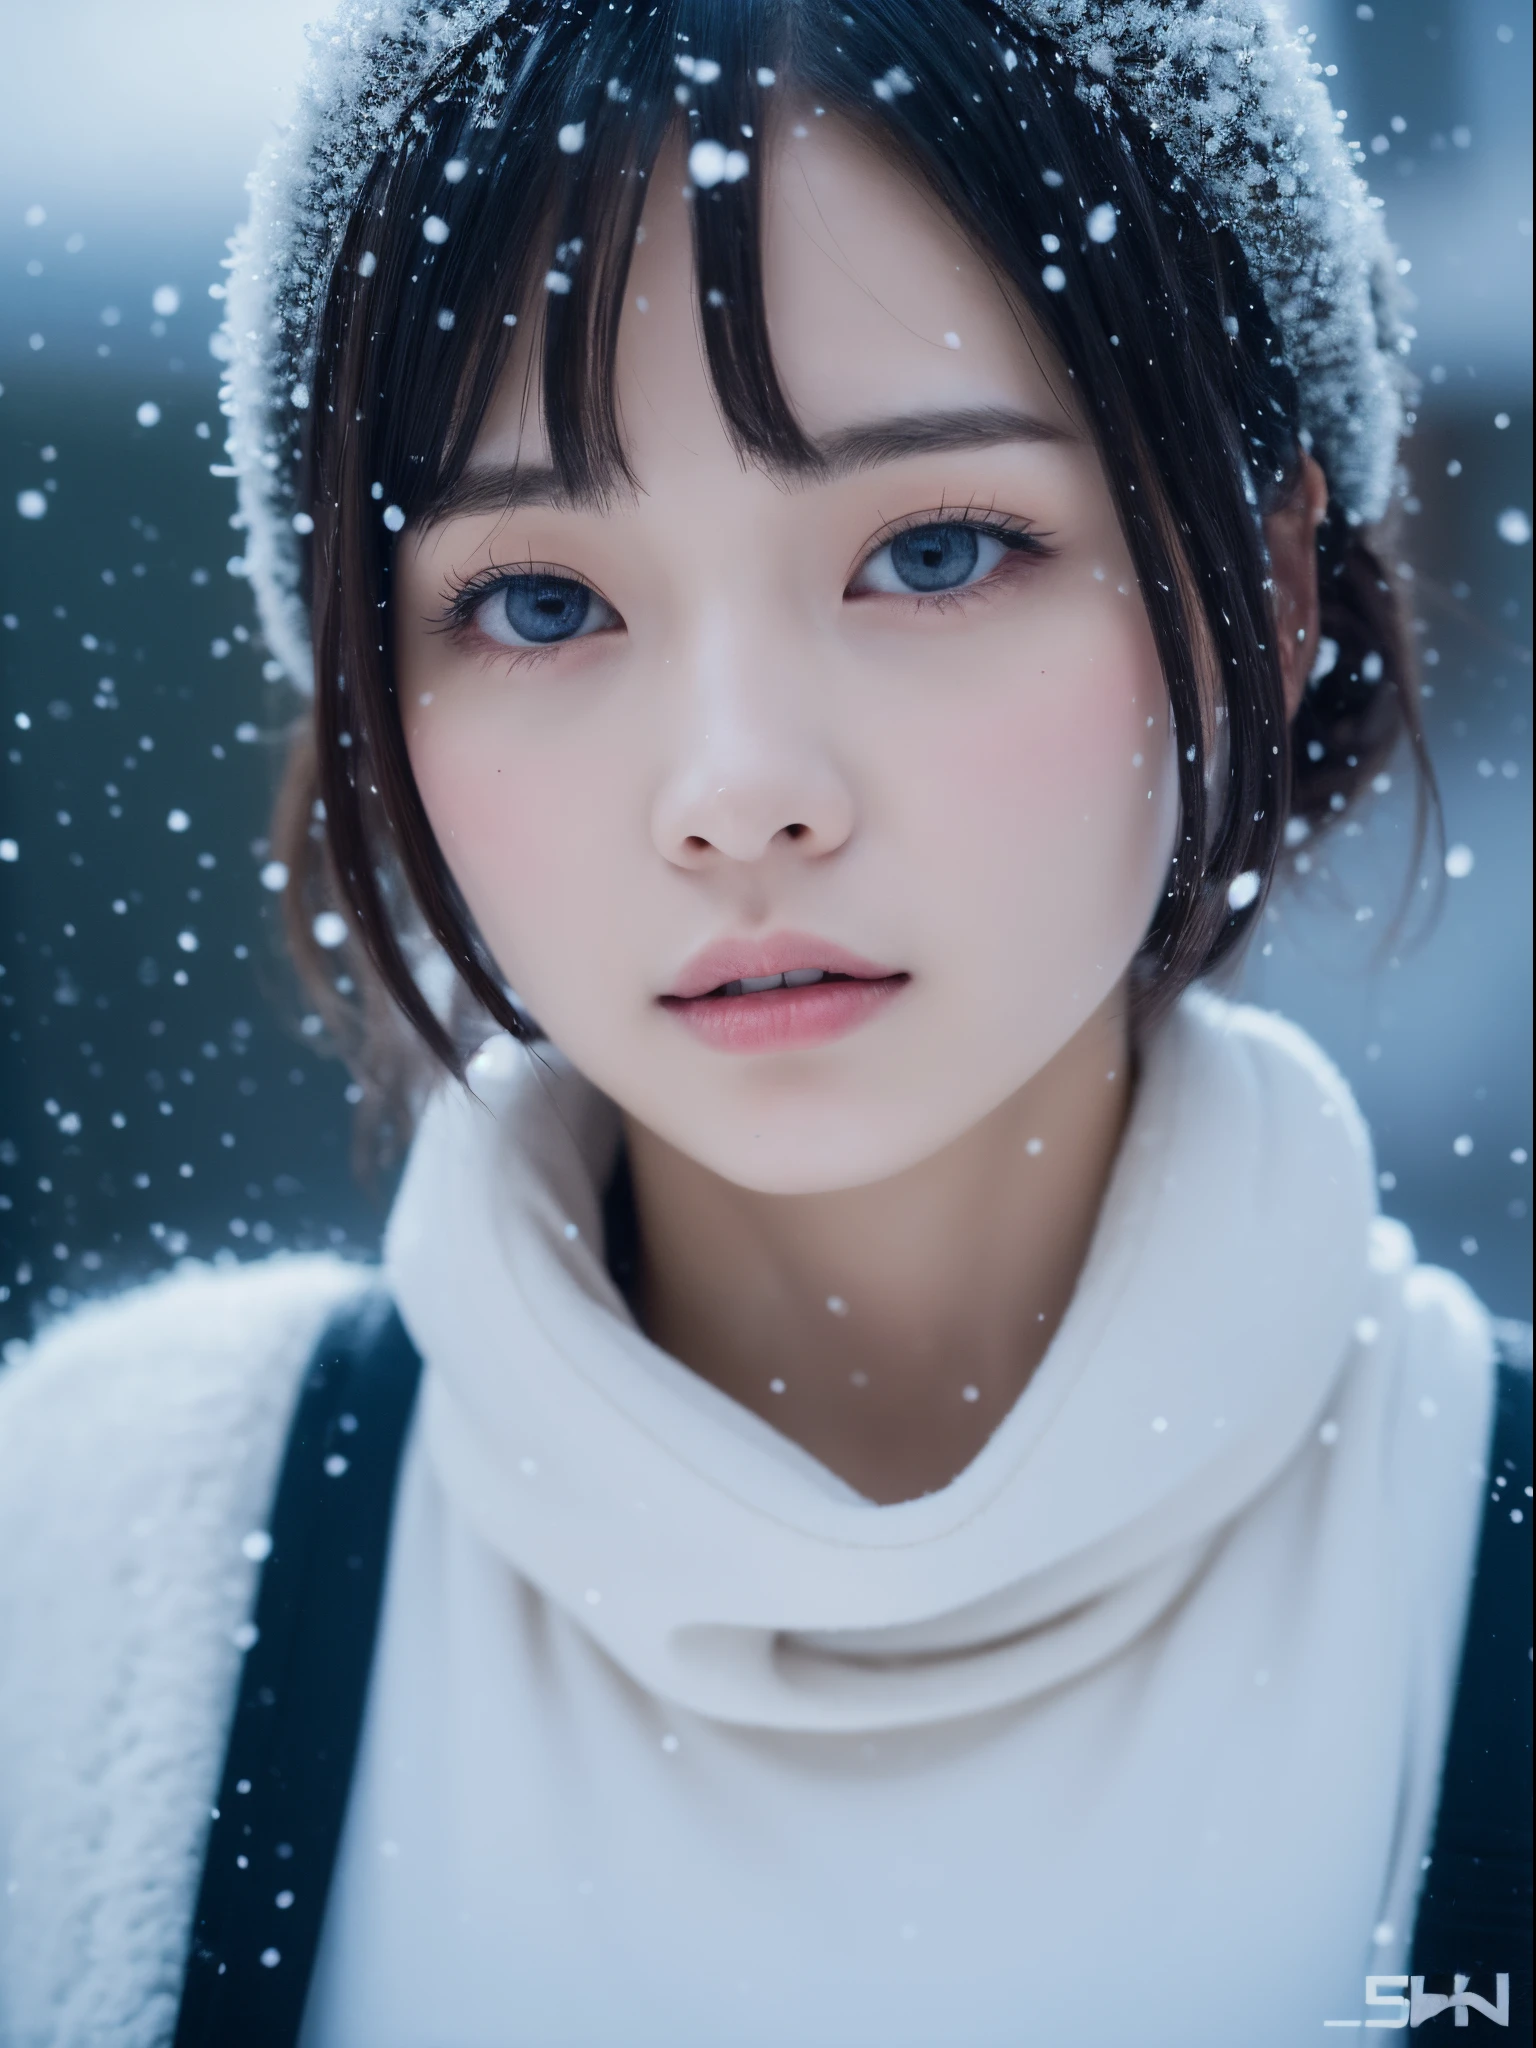 Está nevando、Área da vila de inverno、esporte de inverno、Close de uma mulher posando para foto, Metaverso Médio, Yoshitomo Nara, Modelos Japoneses, linda garota asiática, com cabelo curto, 2 modelo feminino de 4 anos, 4k ], 4K], 27 anos de idade, Sakimichan, Sakimichan